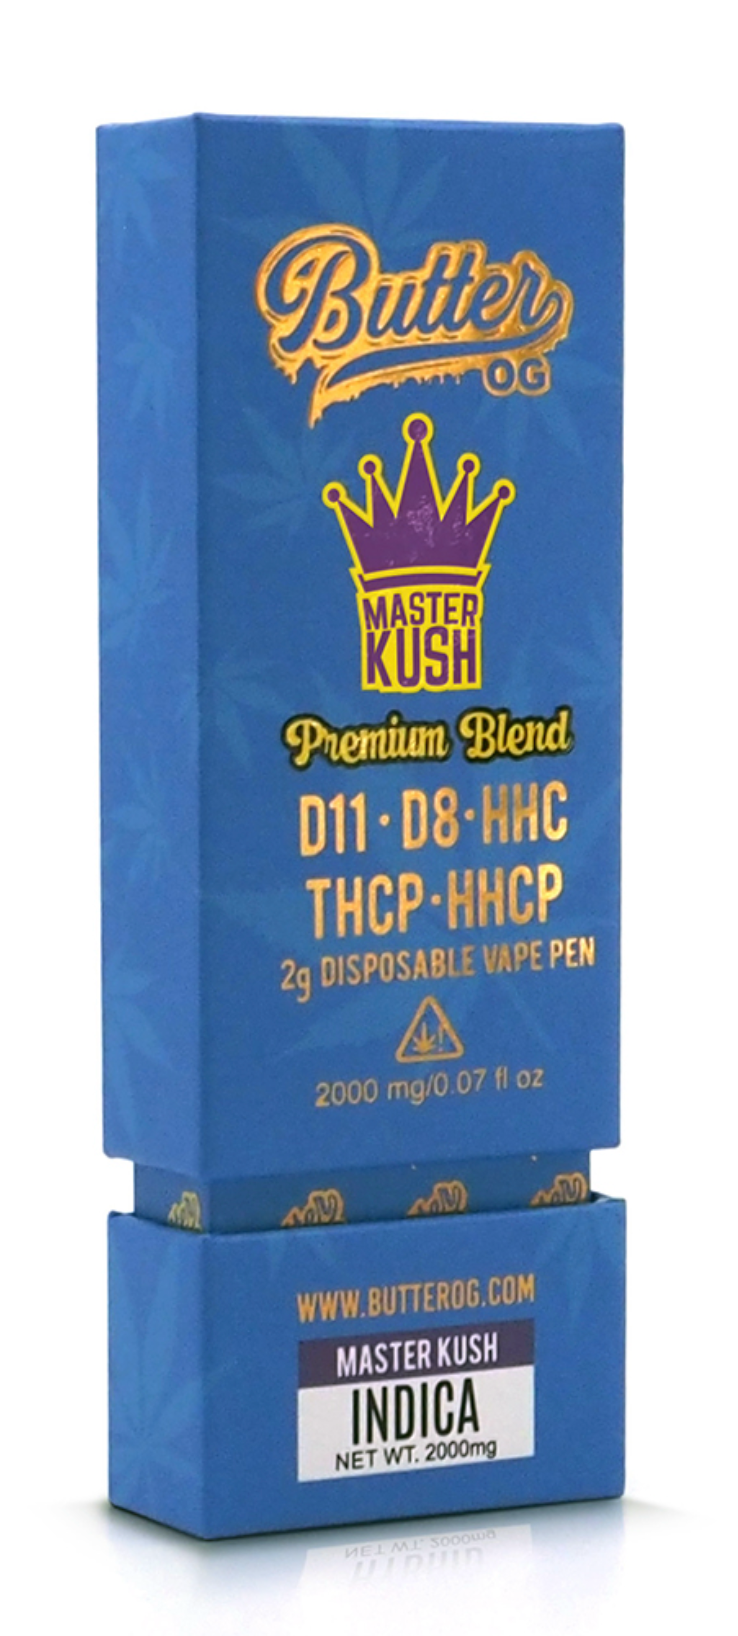 Butter OG Premium Blend D11, D8, HHC, THCP, HHCP 2g Disposable Vape - Master Kush (Indica) - Headshop.com